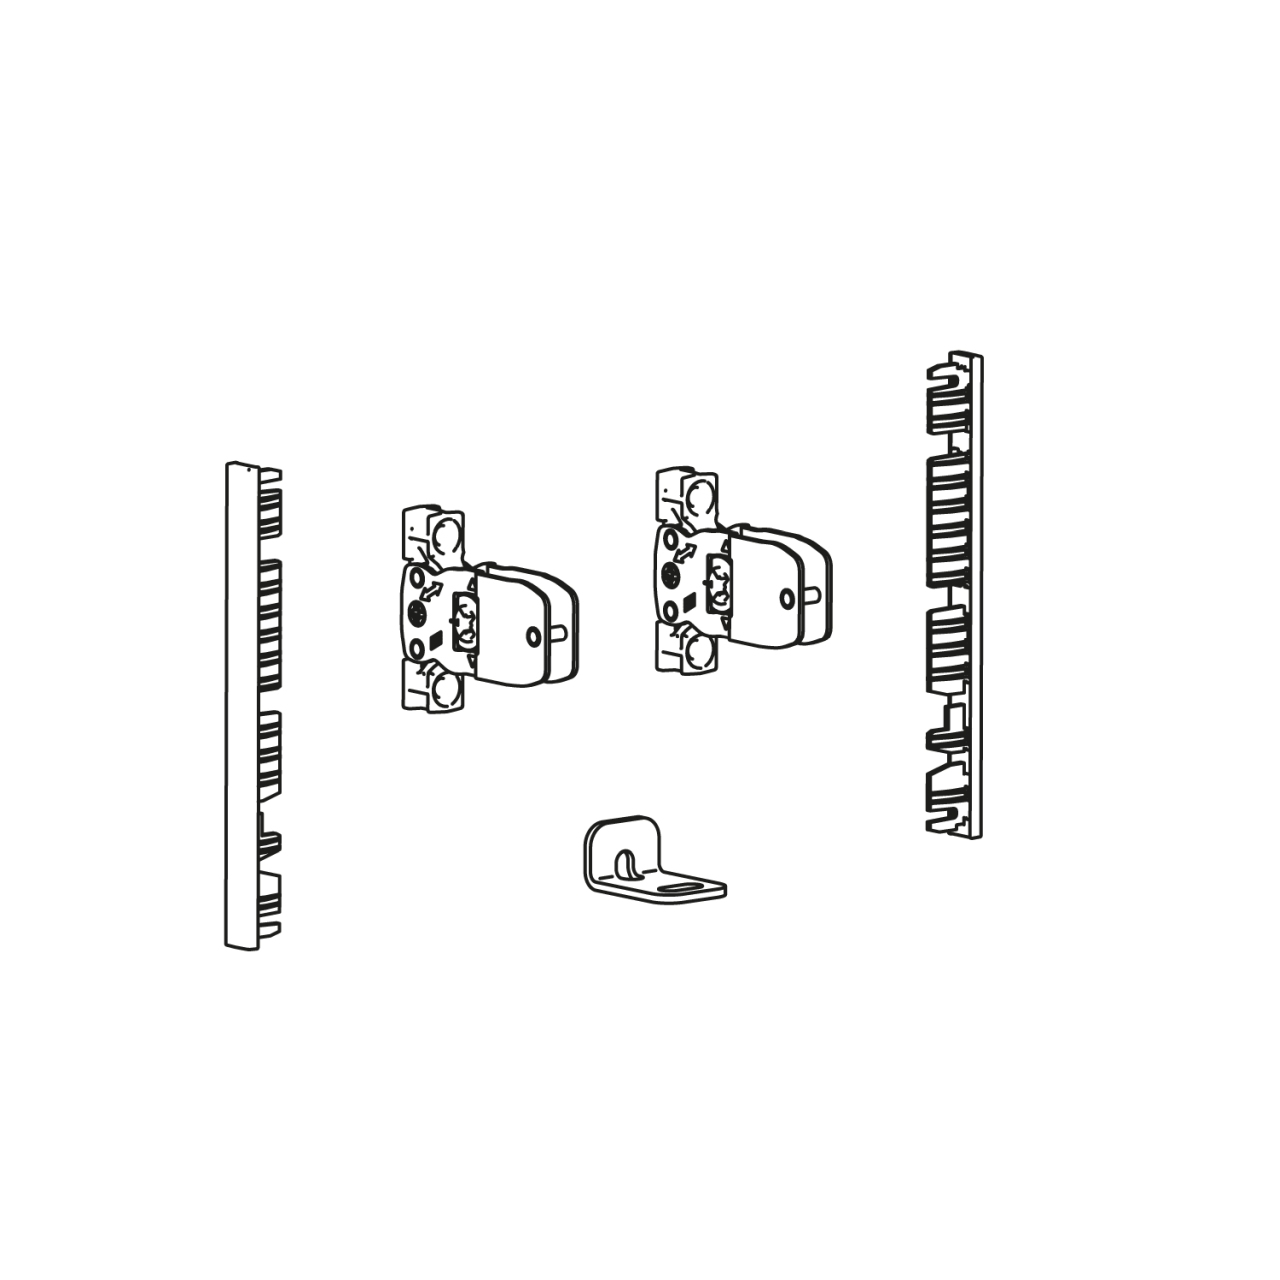 HETTICH AvanTech YOU Verbinderset für Innenfront zum Selbstablängen, Nutzung mit Zarge, Systemhöhe 101, weiß, 9257615